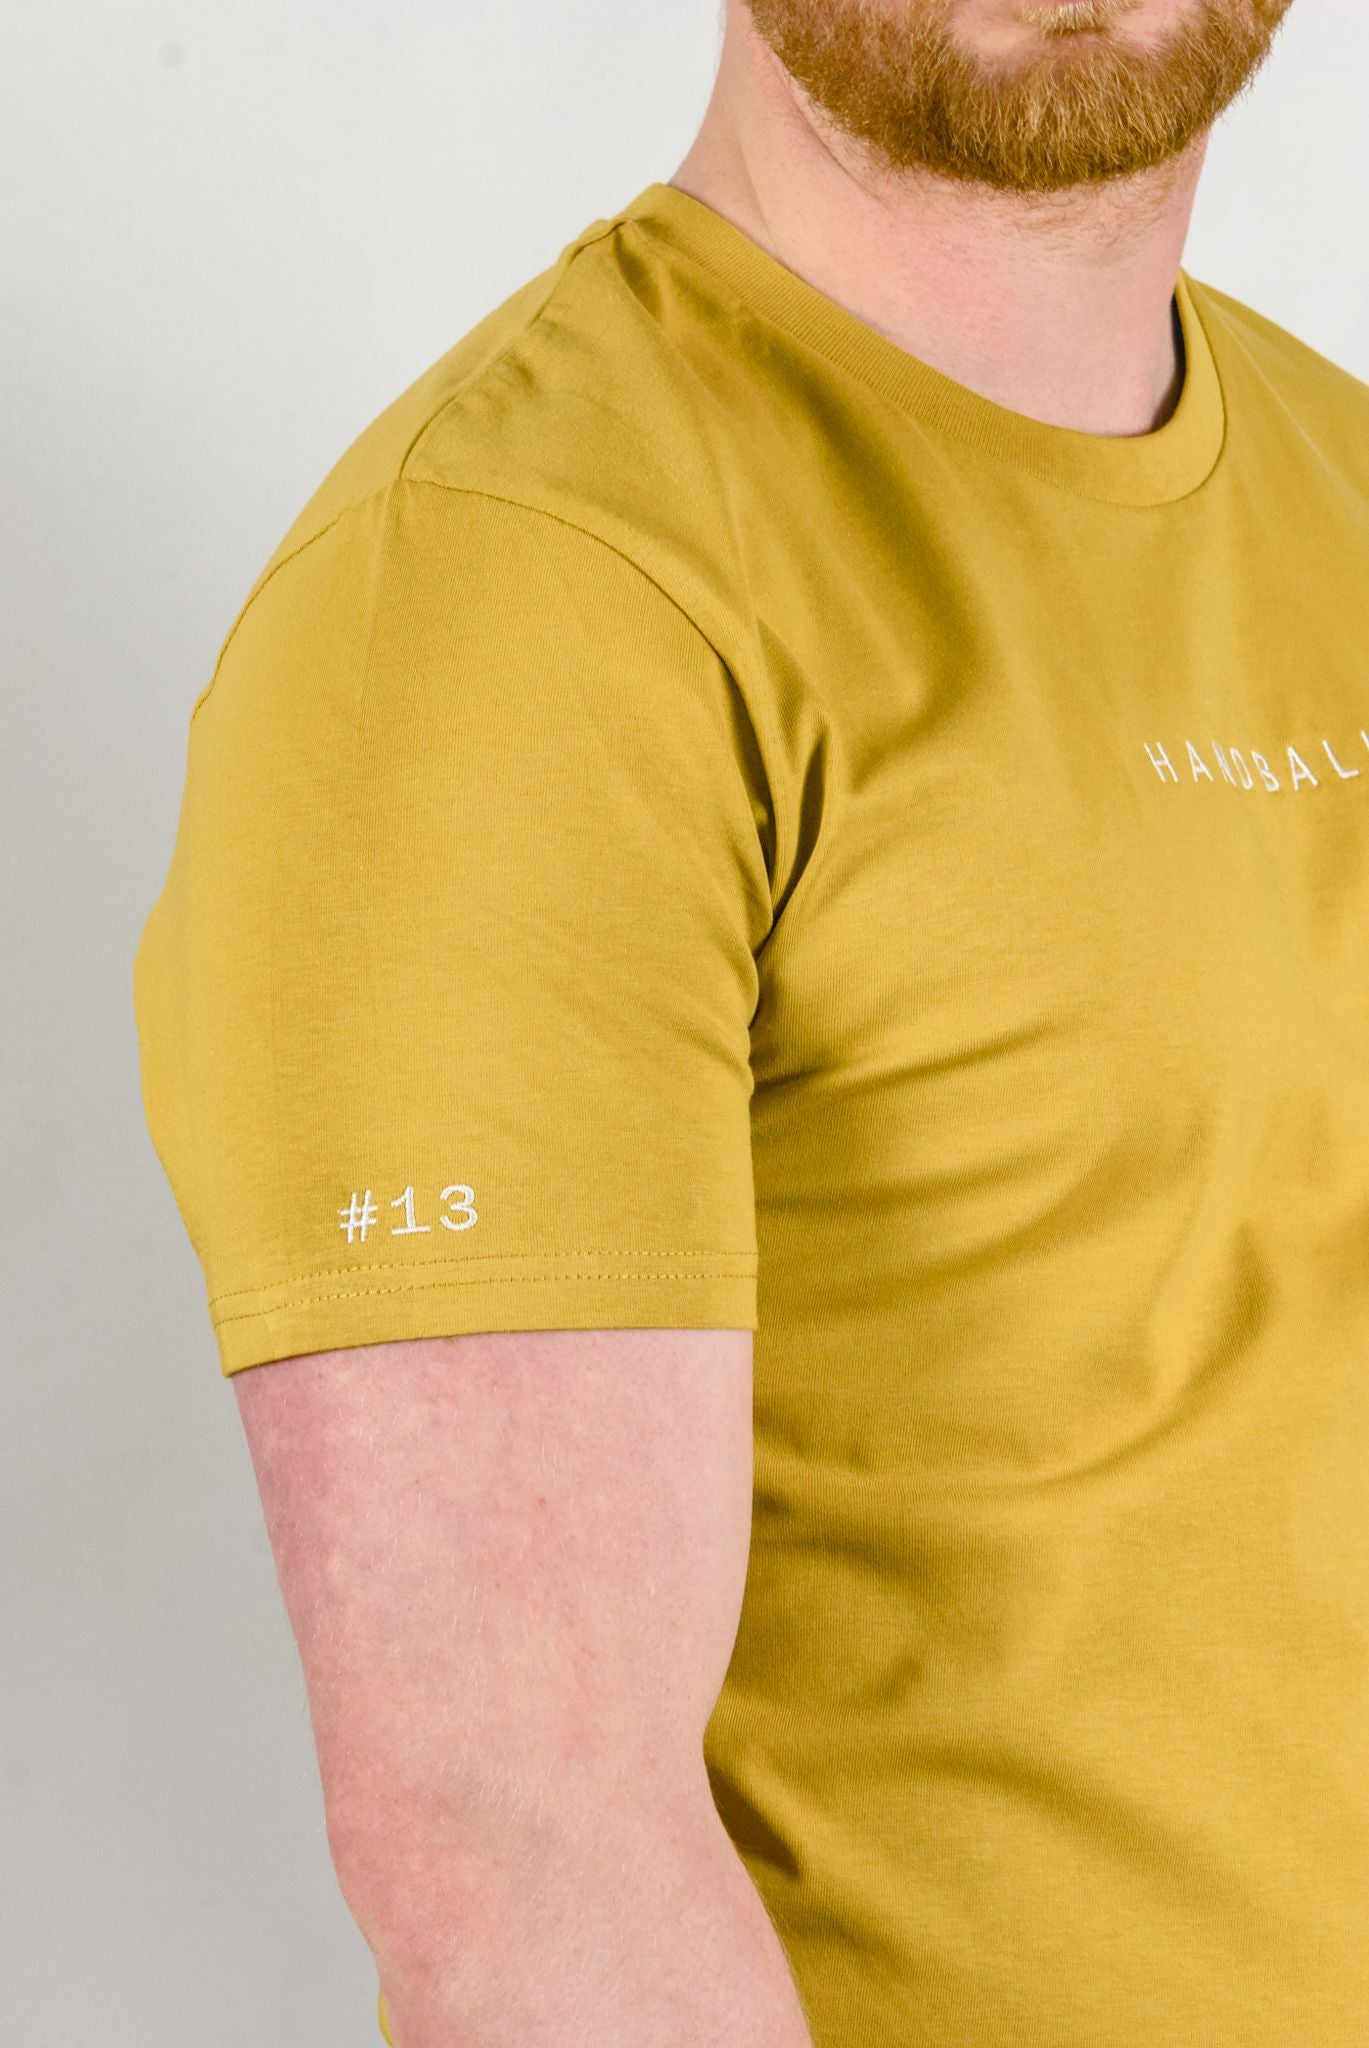 Das Handball T-Shirt mit Spielernummer personalisierbar